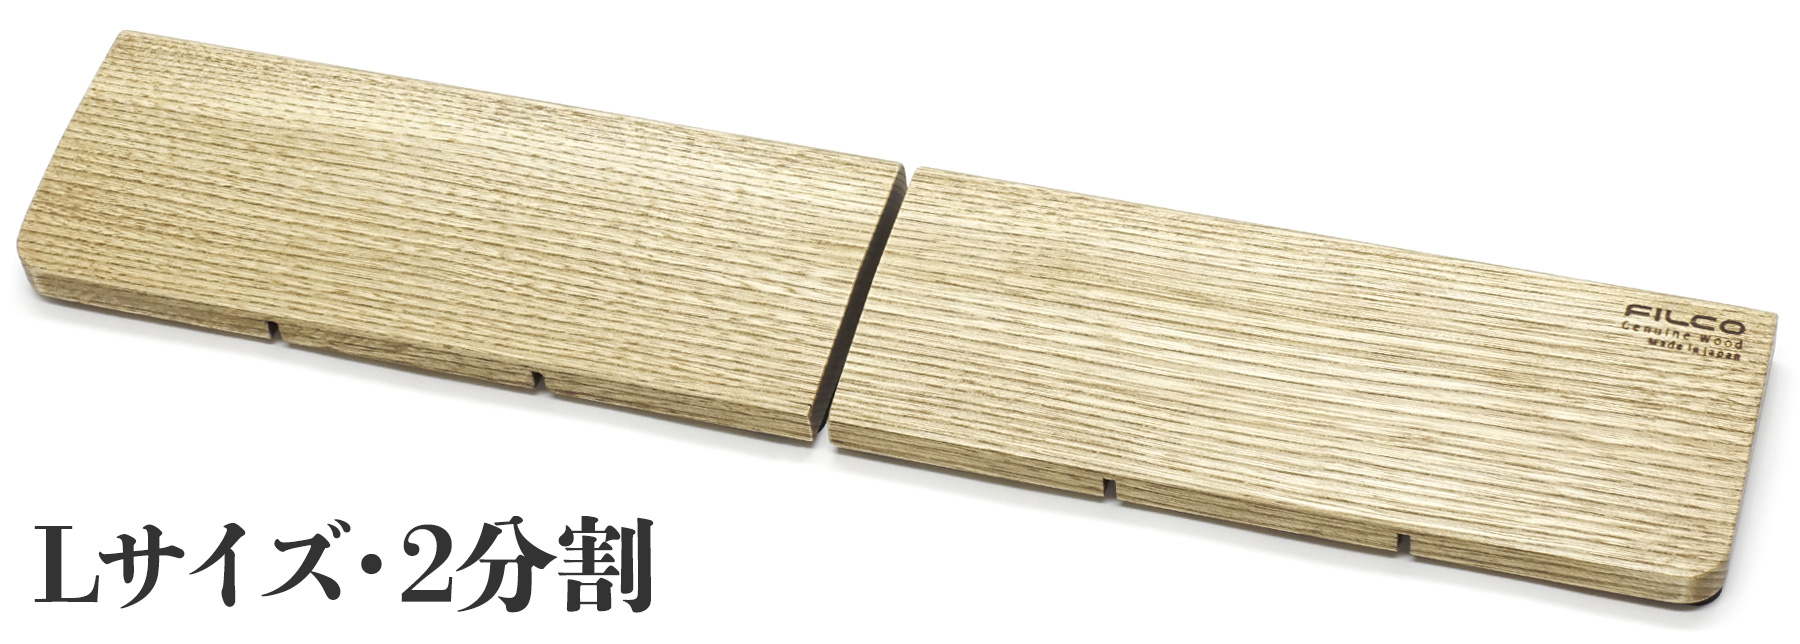 【通販限定】【北海道産天然木】FILCO Genuine Wood Wrist Rest L size 分離型(2分割)